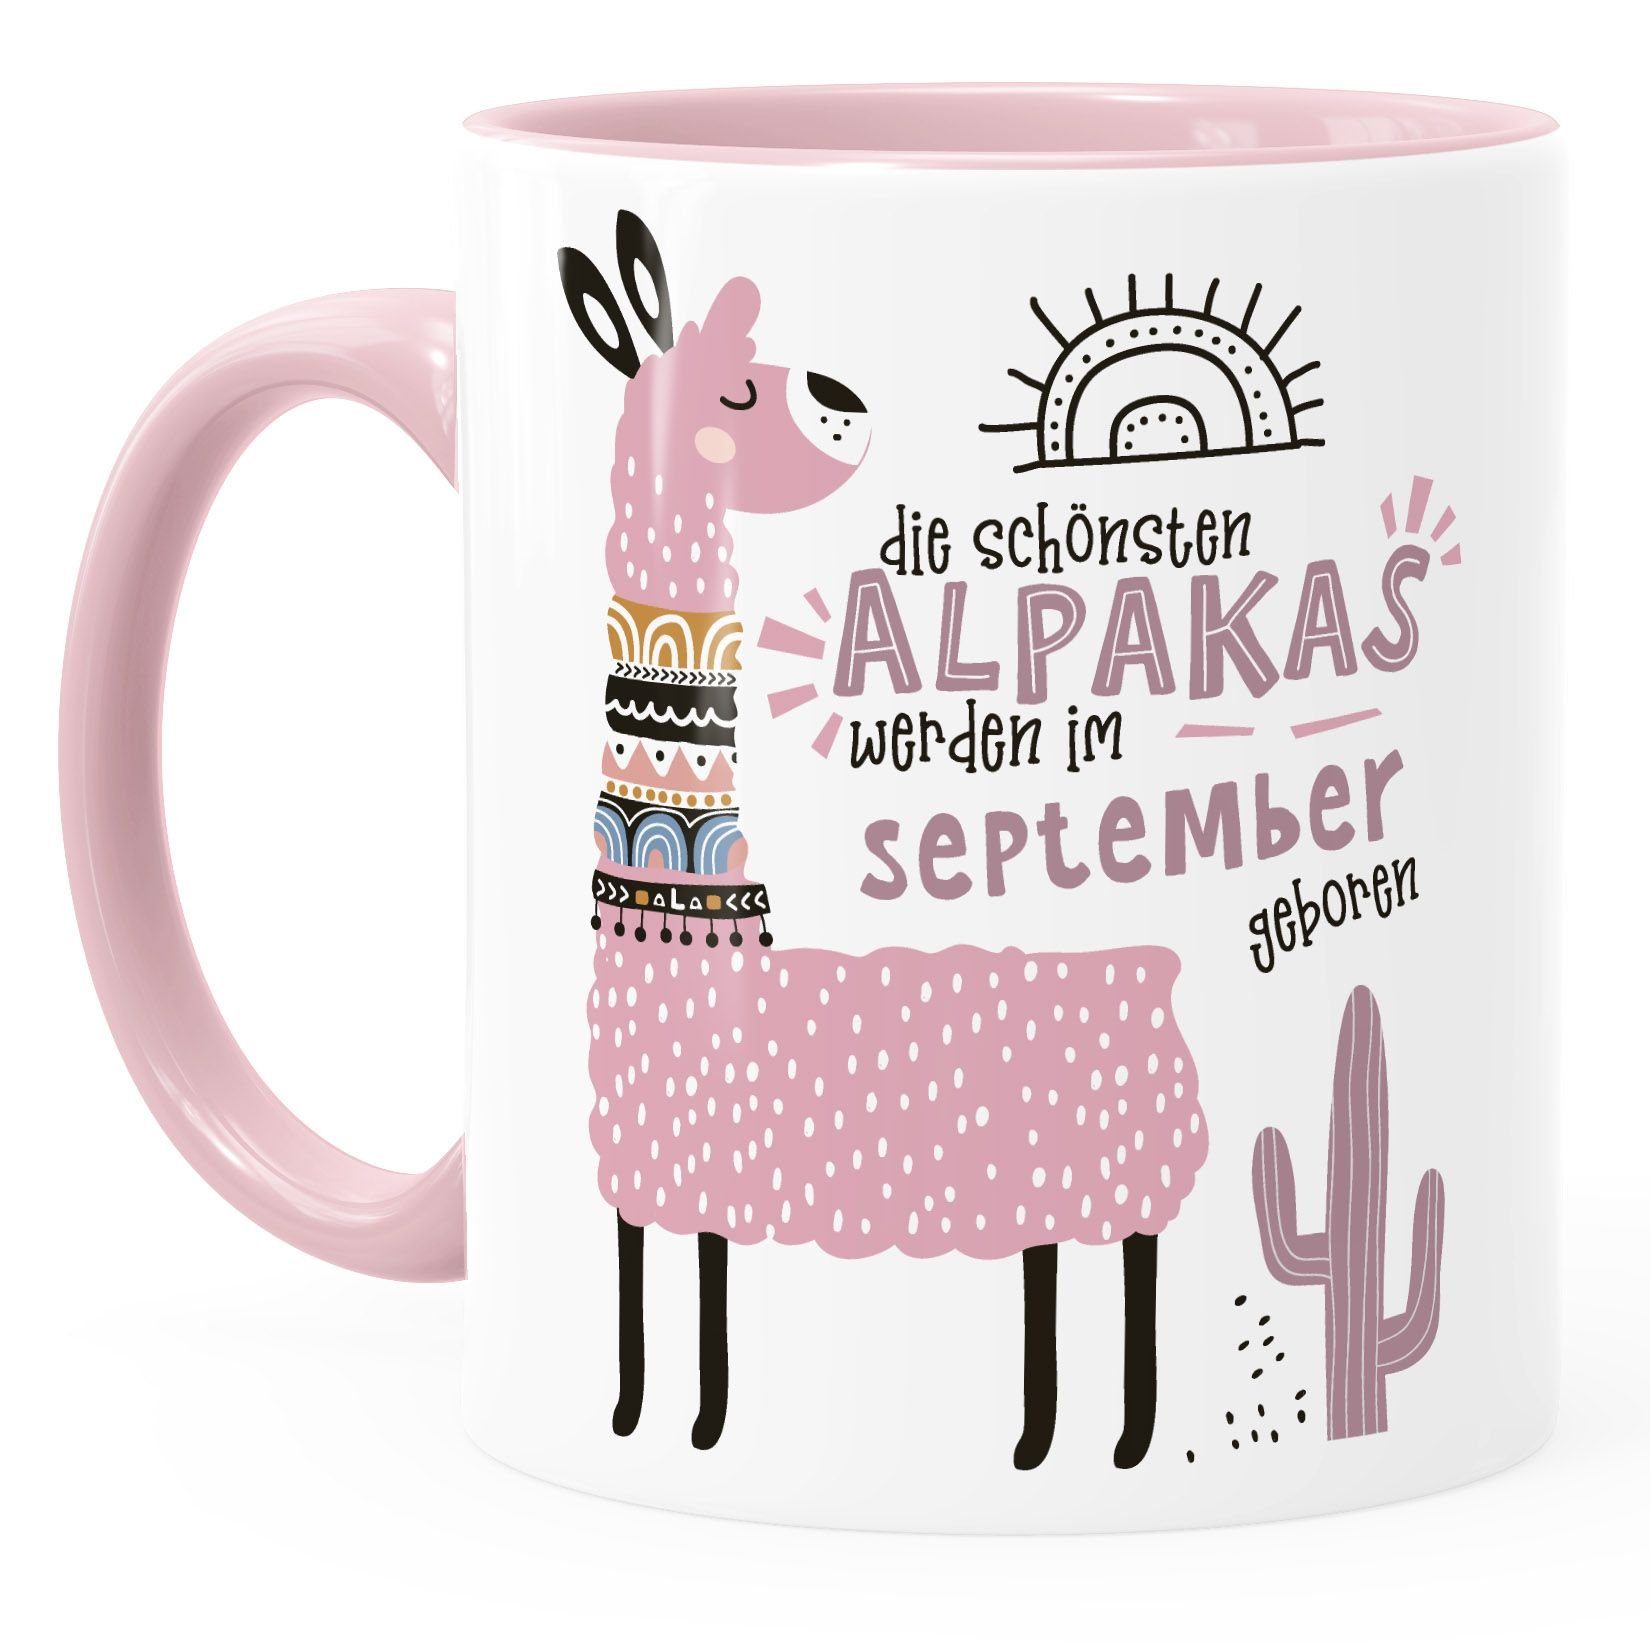 SpecialMe Motiv SpecialMe®, Geburtsmonat Januar-Dezember werden anpassbares individuelle geboren rosa September Alpakas Rosa Kaffee-Tasse Keramik Lama Geburtags-Geschenke im Die Schönsten Tasse